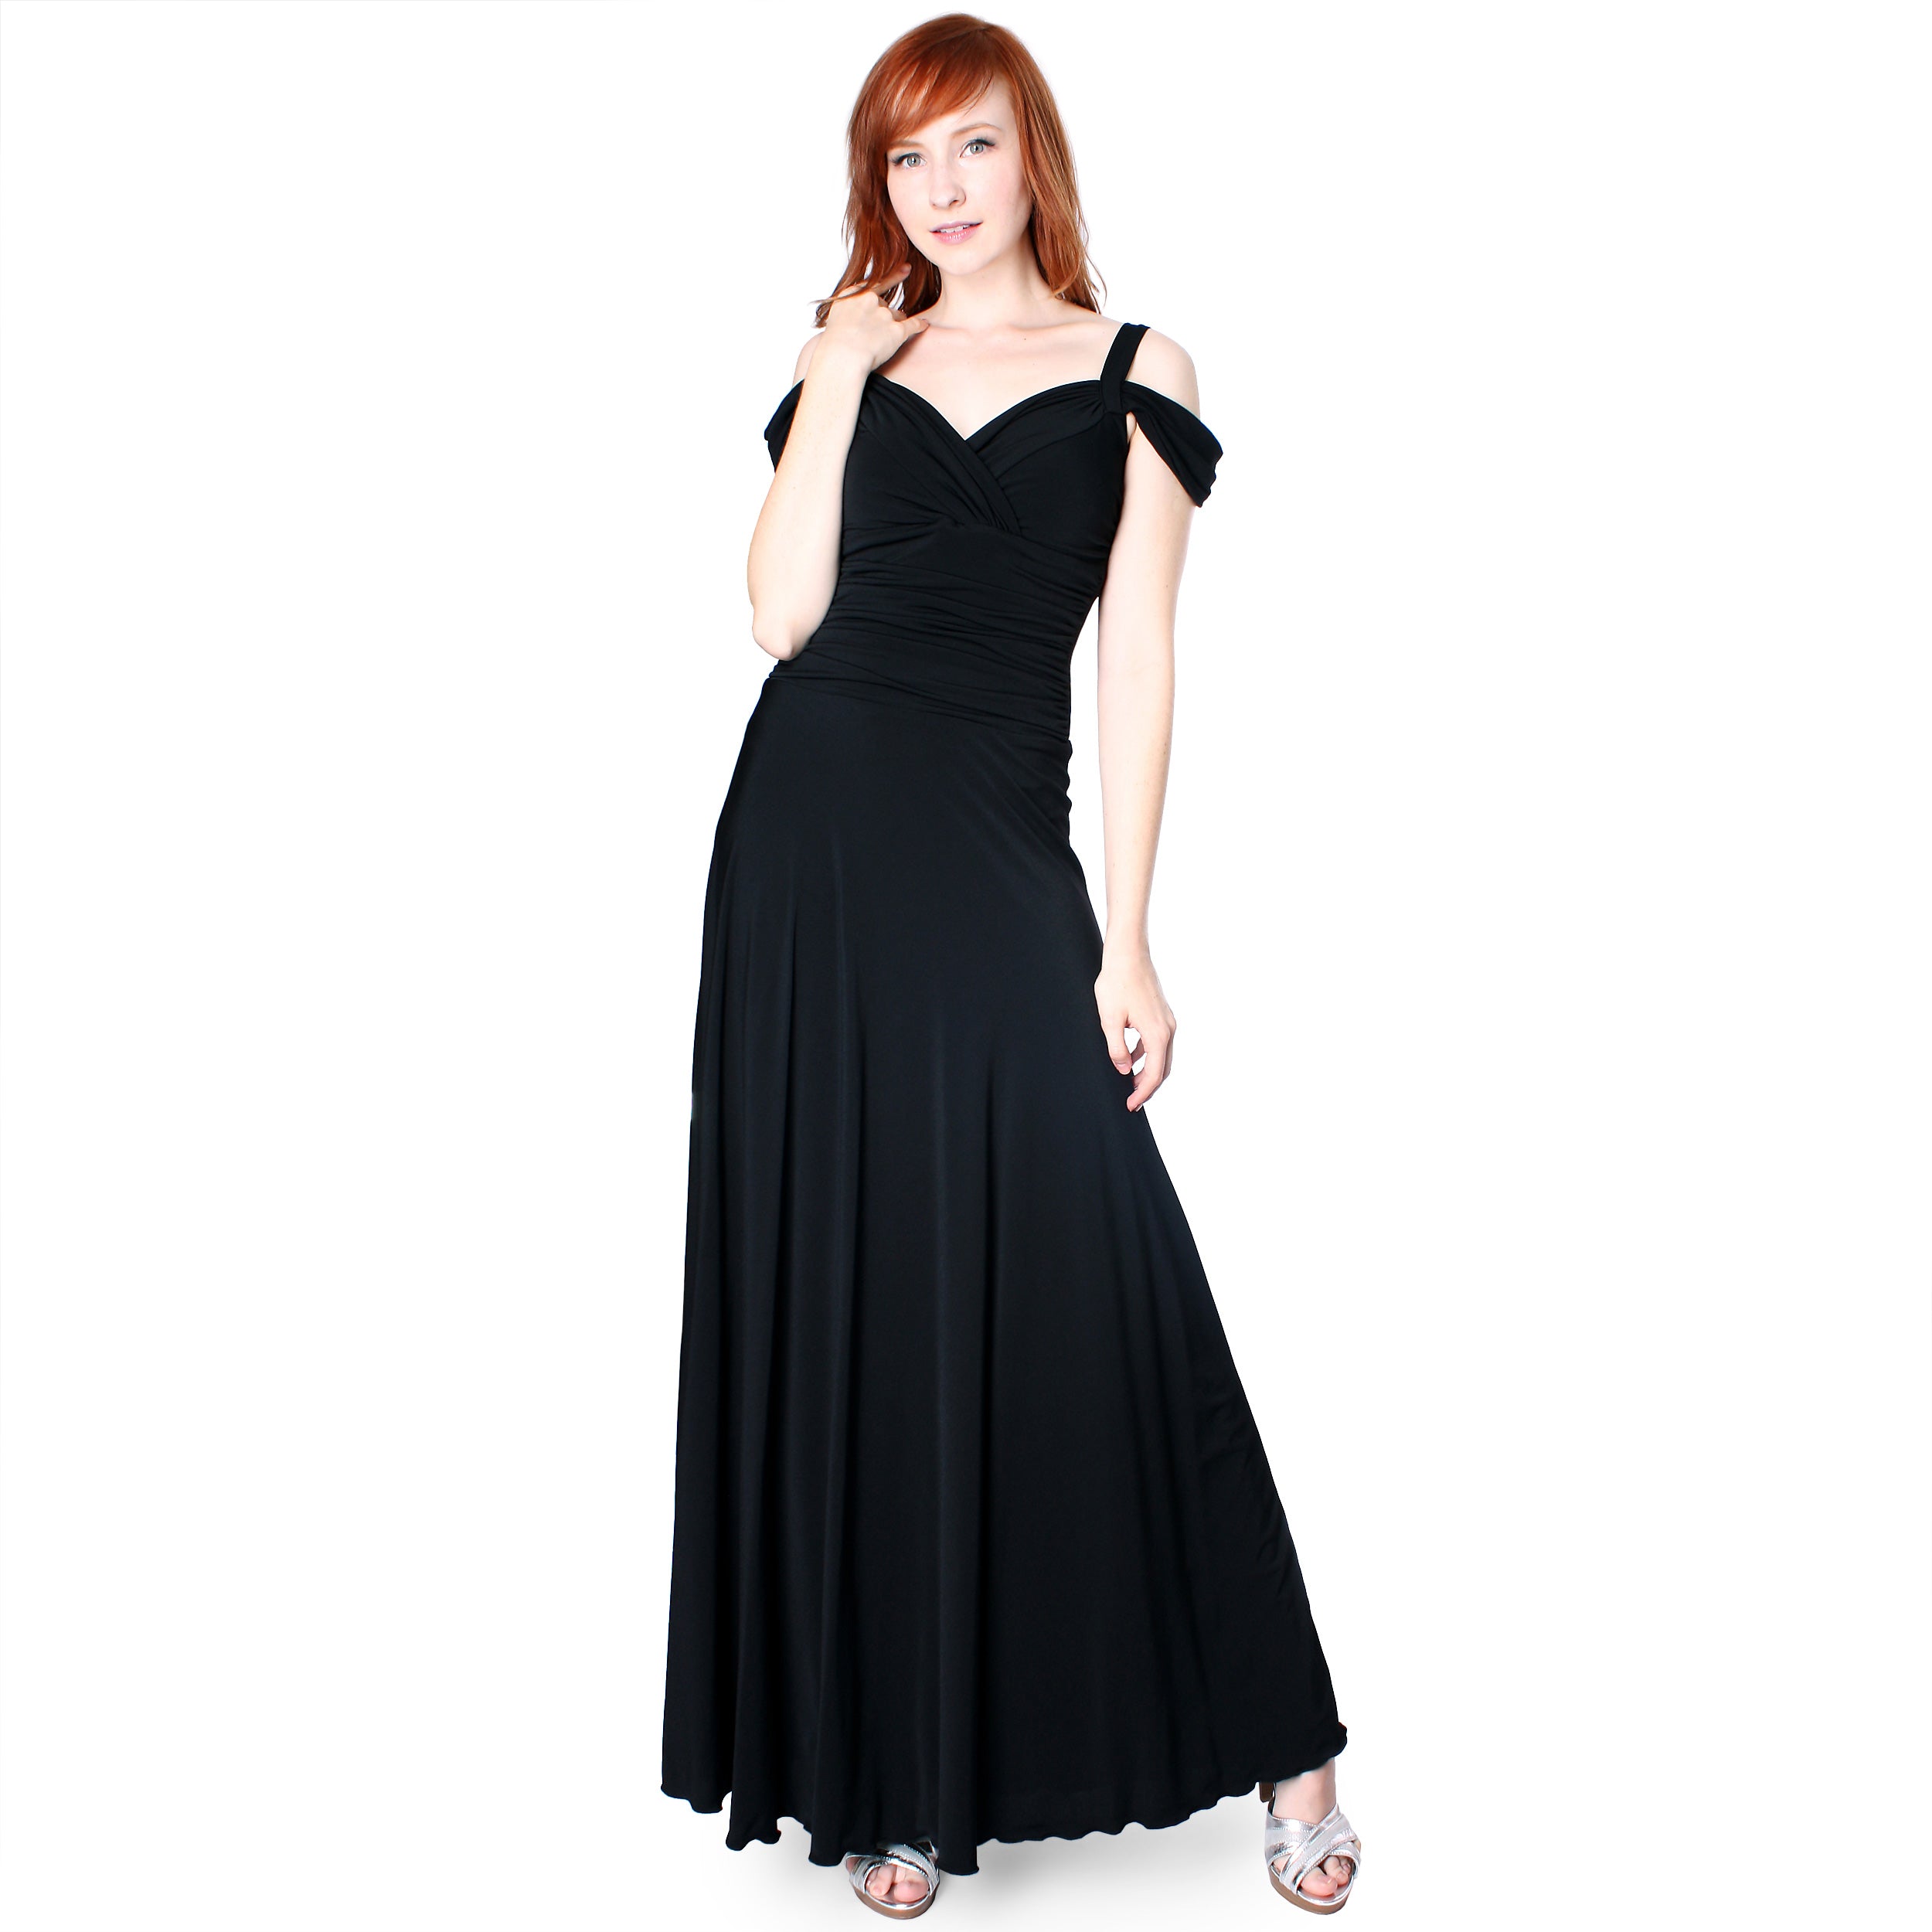 Evanese Women's Elegant Slip On Long Formal Evening Dress with Shoulder bands